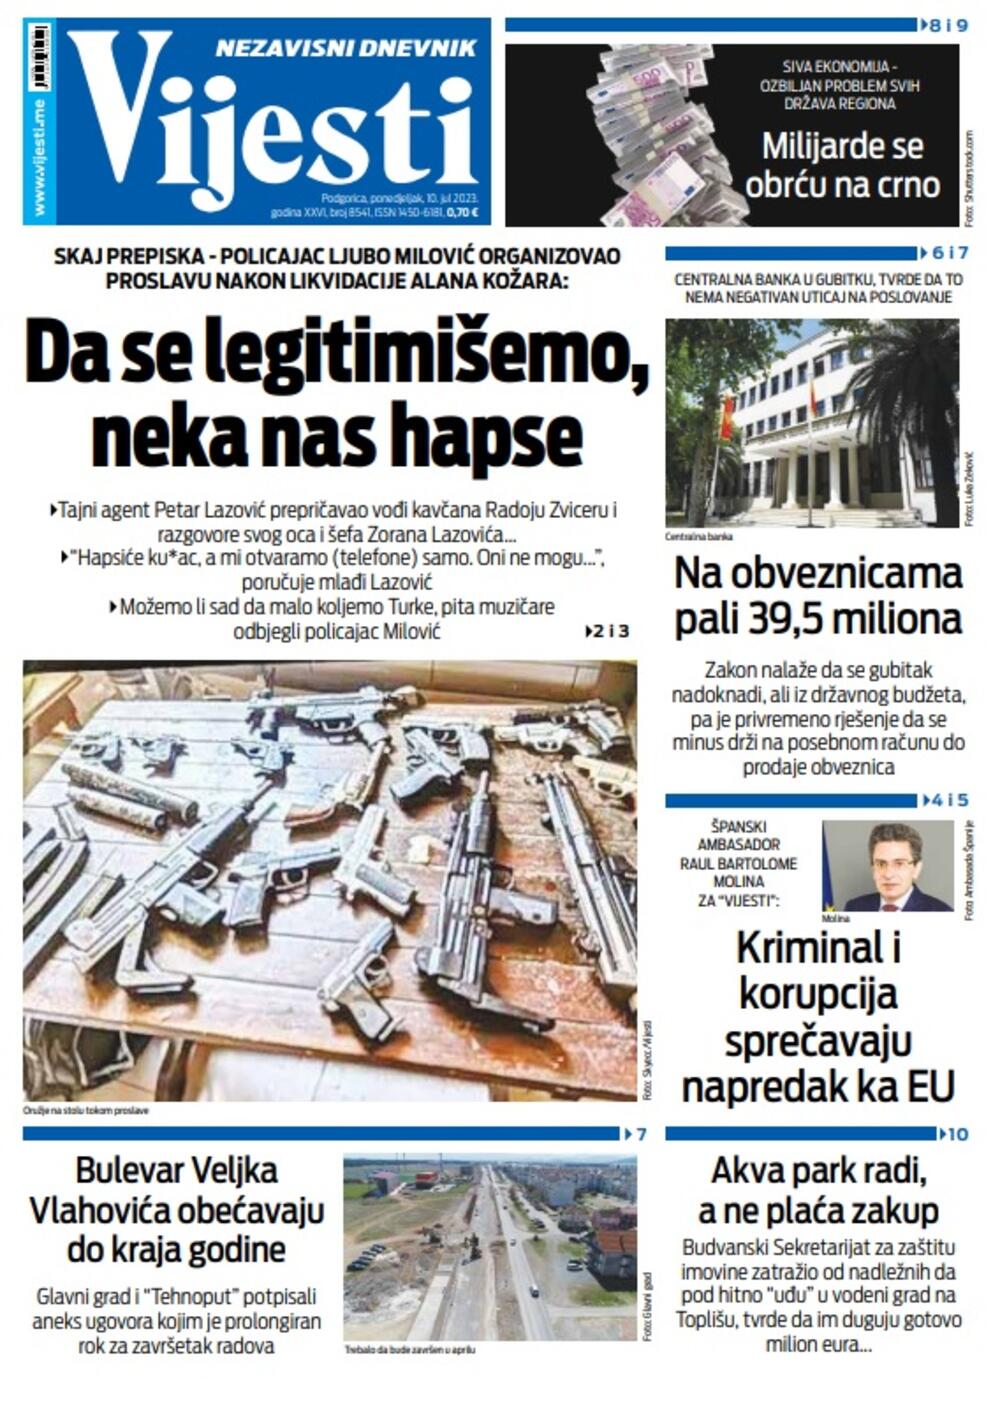 Naslovna strana "Vijesti" za 10. jul 2023., Foto: Vijesti